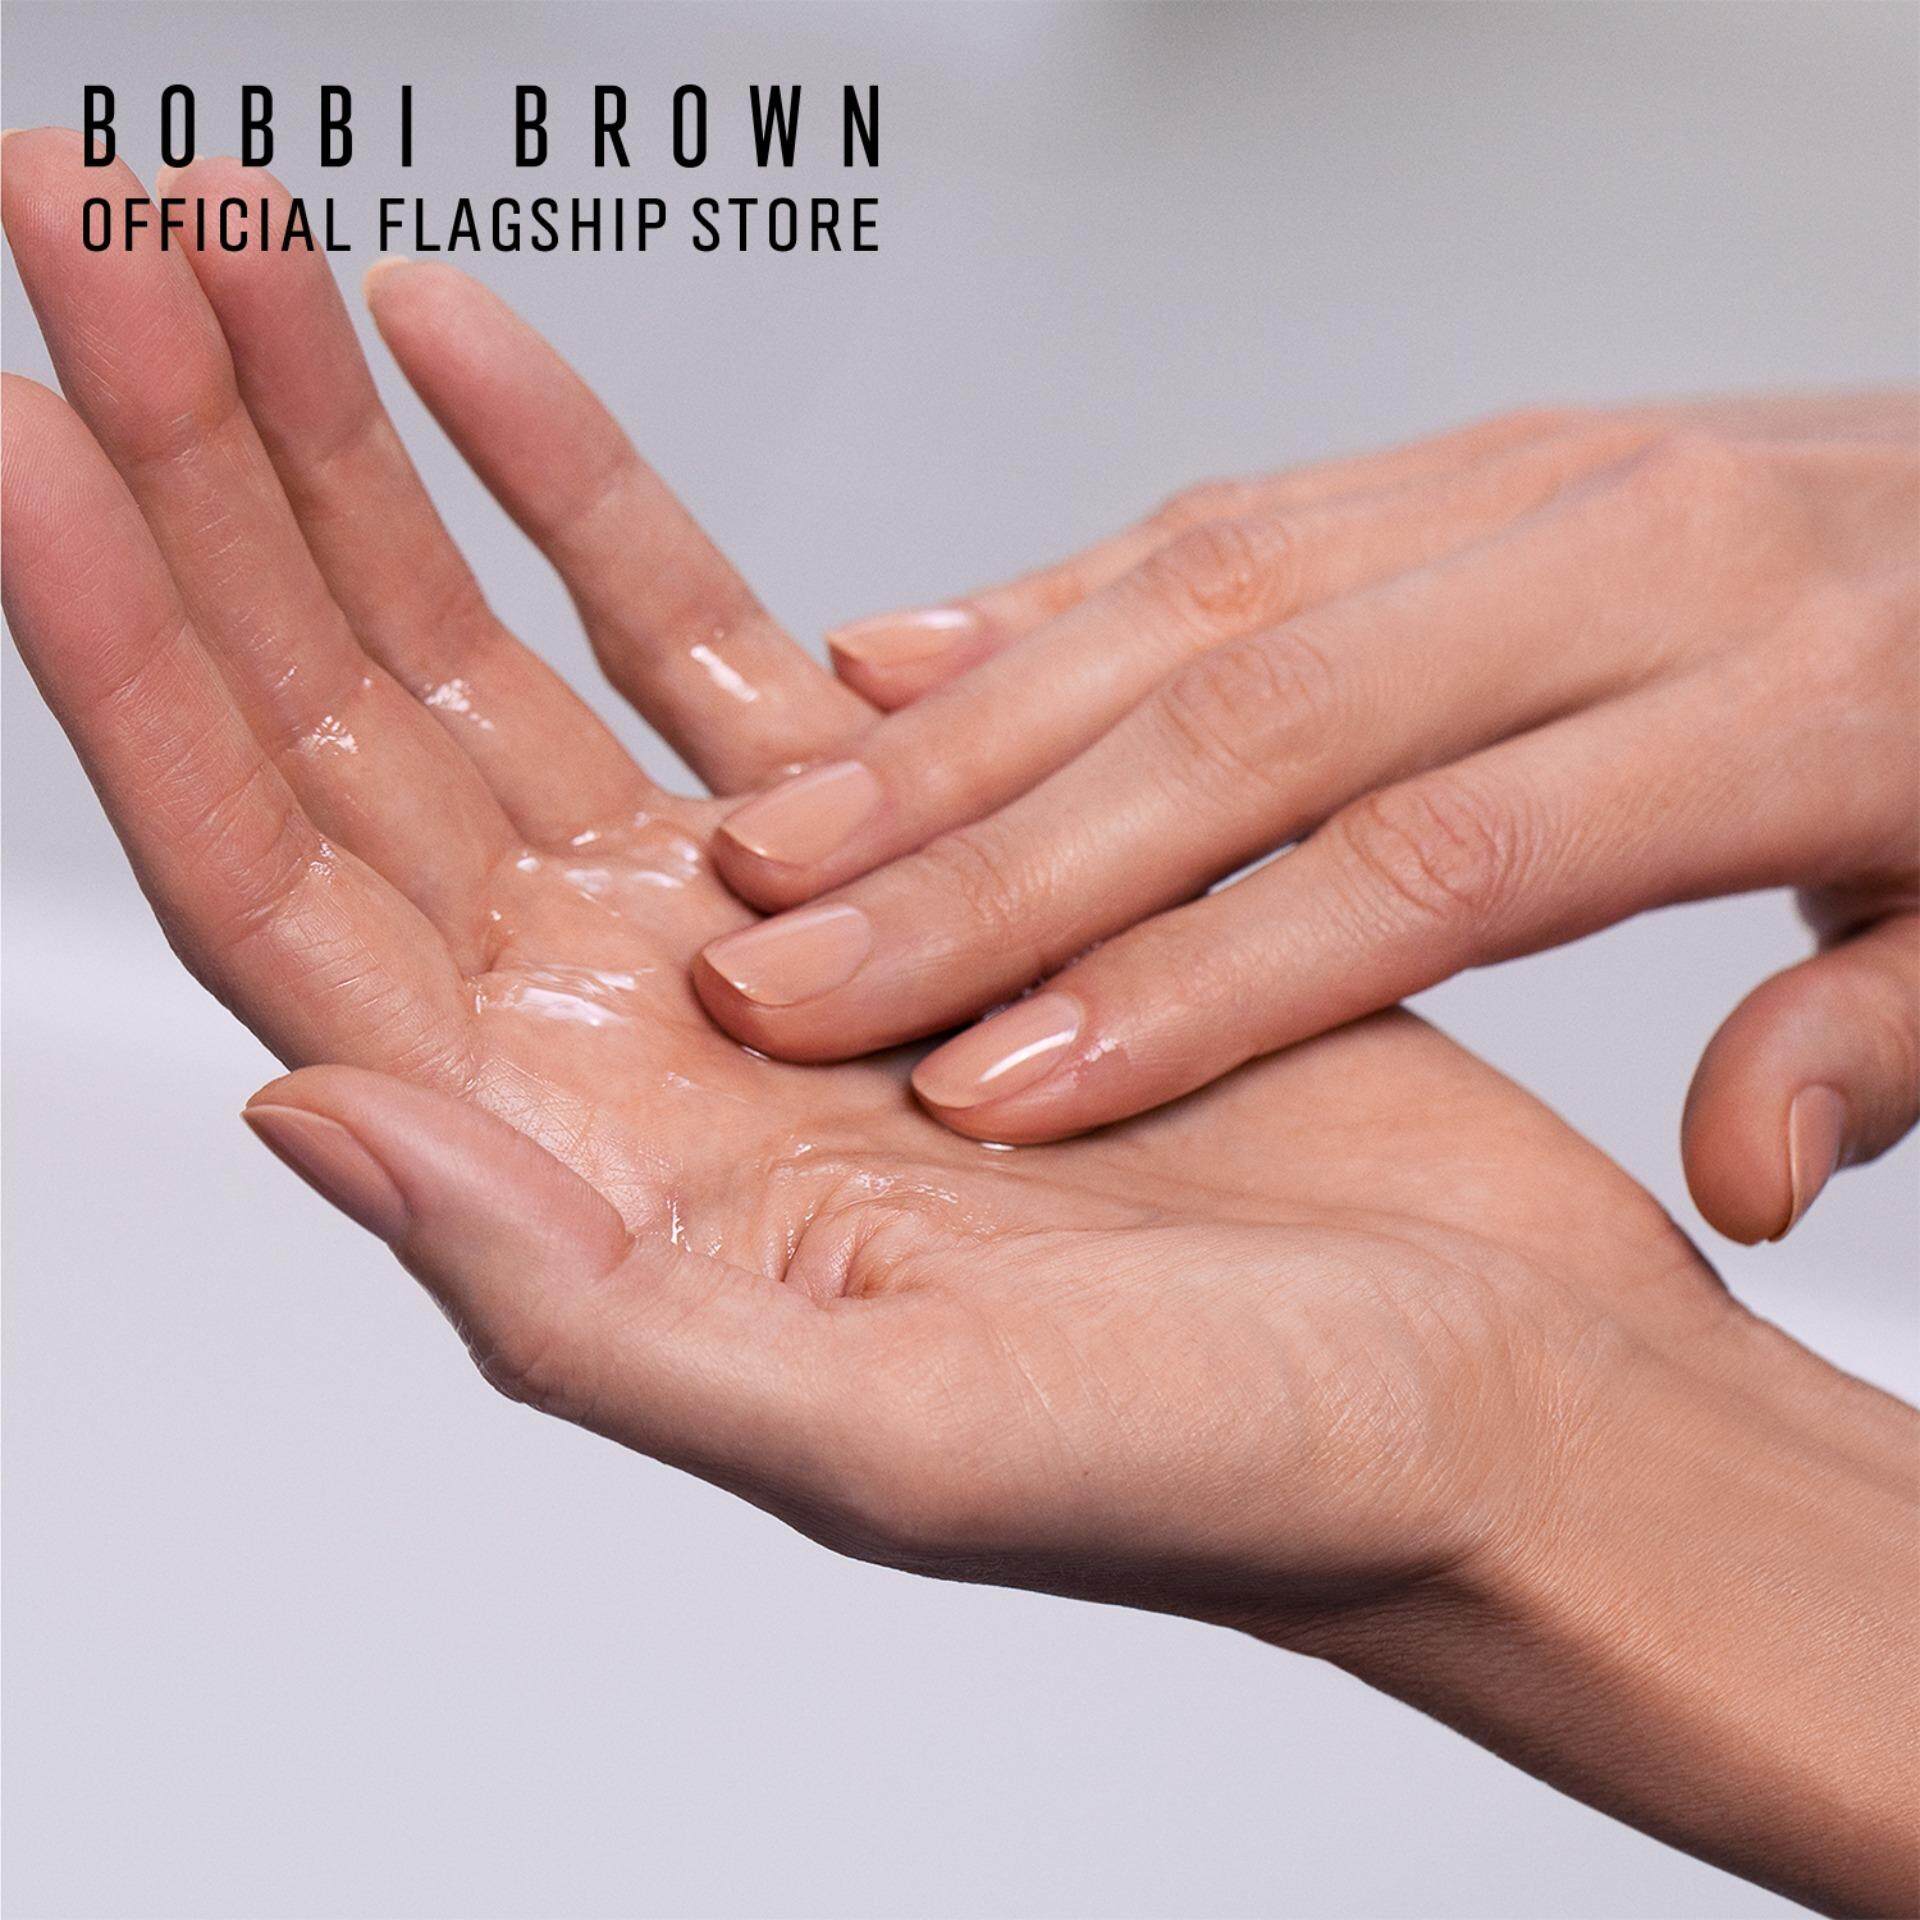 บ็อบบี้ บราวน์ คลีนซิ่งออยล์ เช็ดเครื่องสำอางค์ Bobbi Brown Soothing Cleansing Oil - Makeup Remover and Cleanser 200 ml.